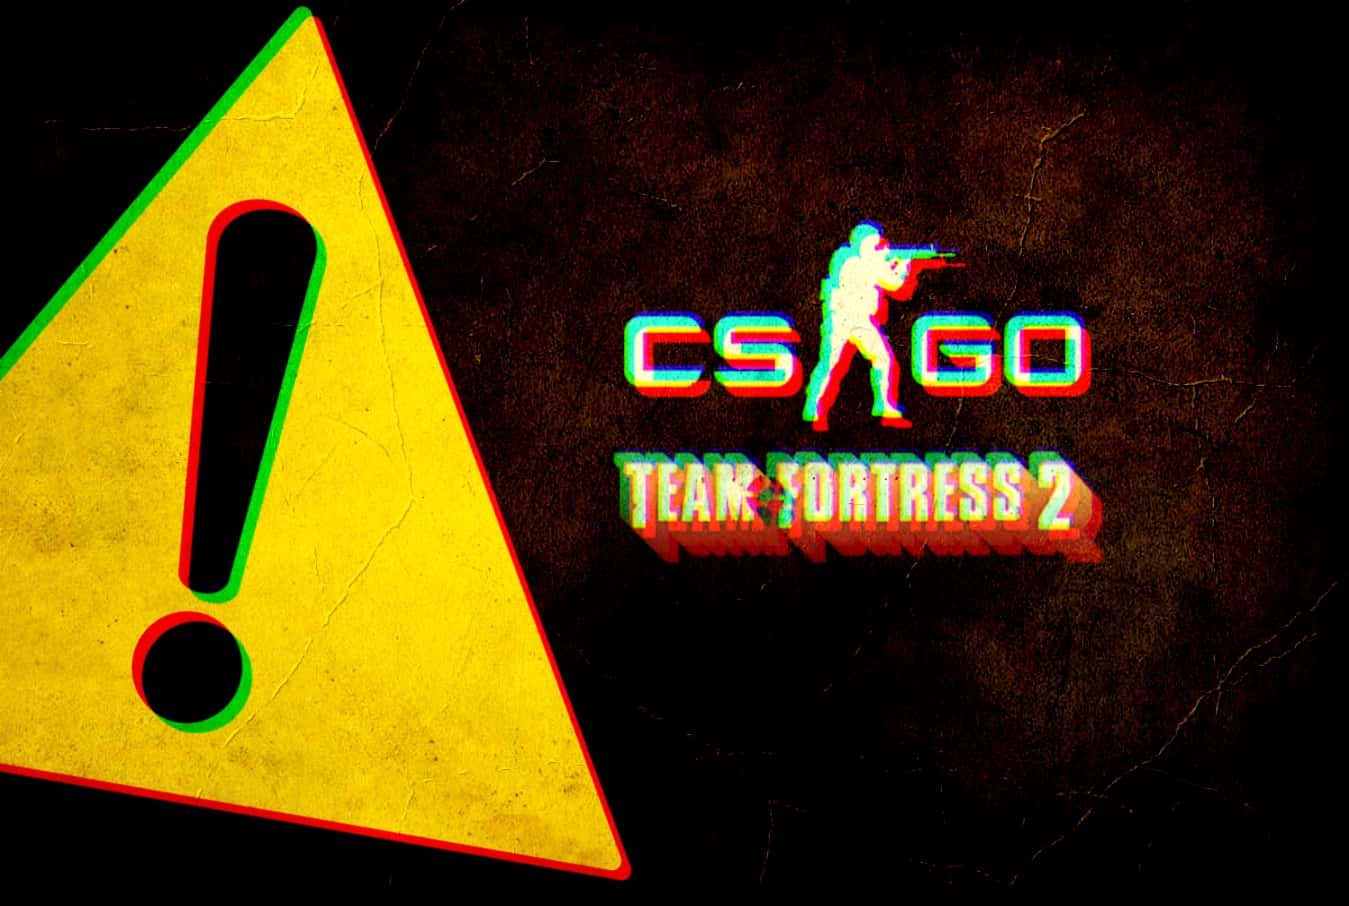 CS:GO & Team Fortress 2 Source code leaked - Virus alert for TF2